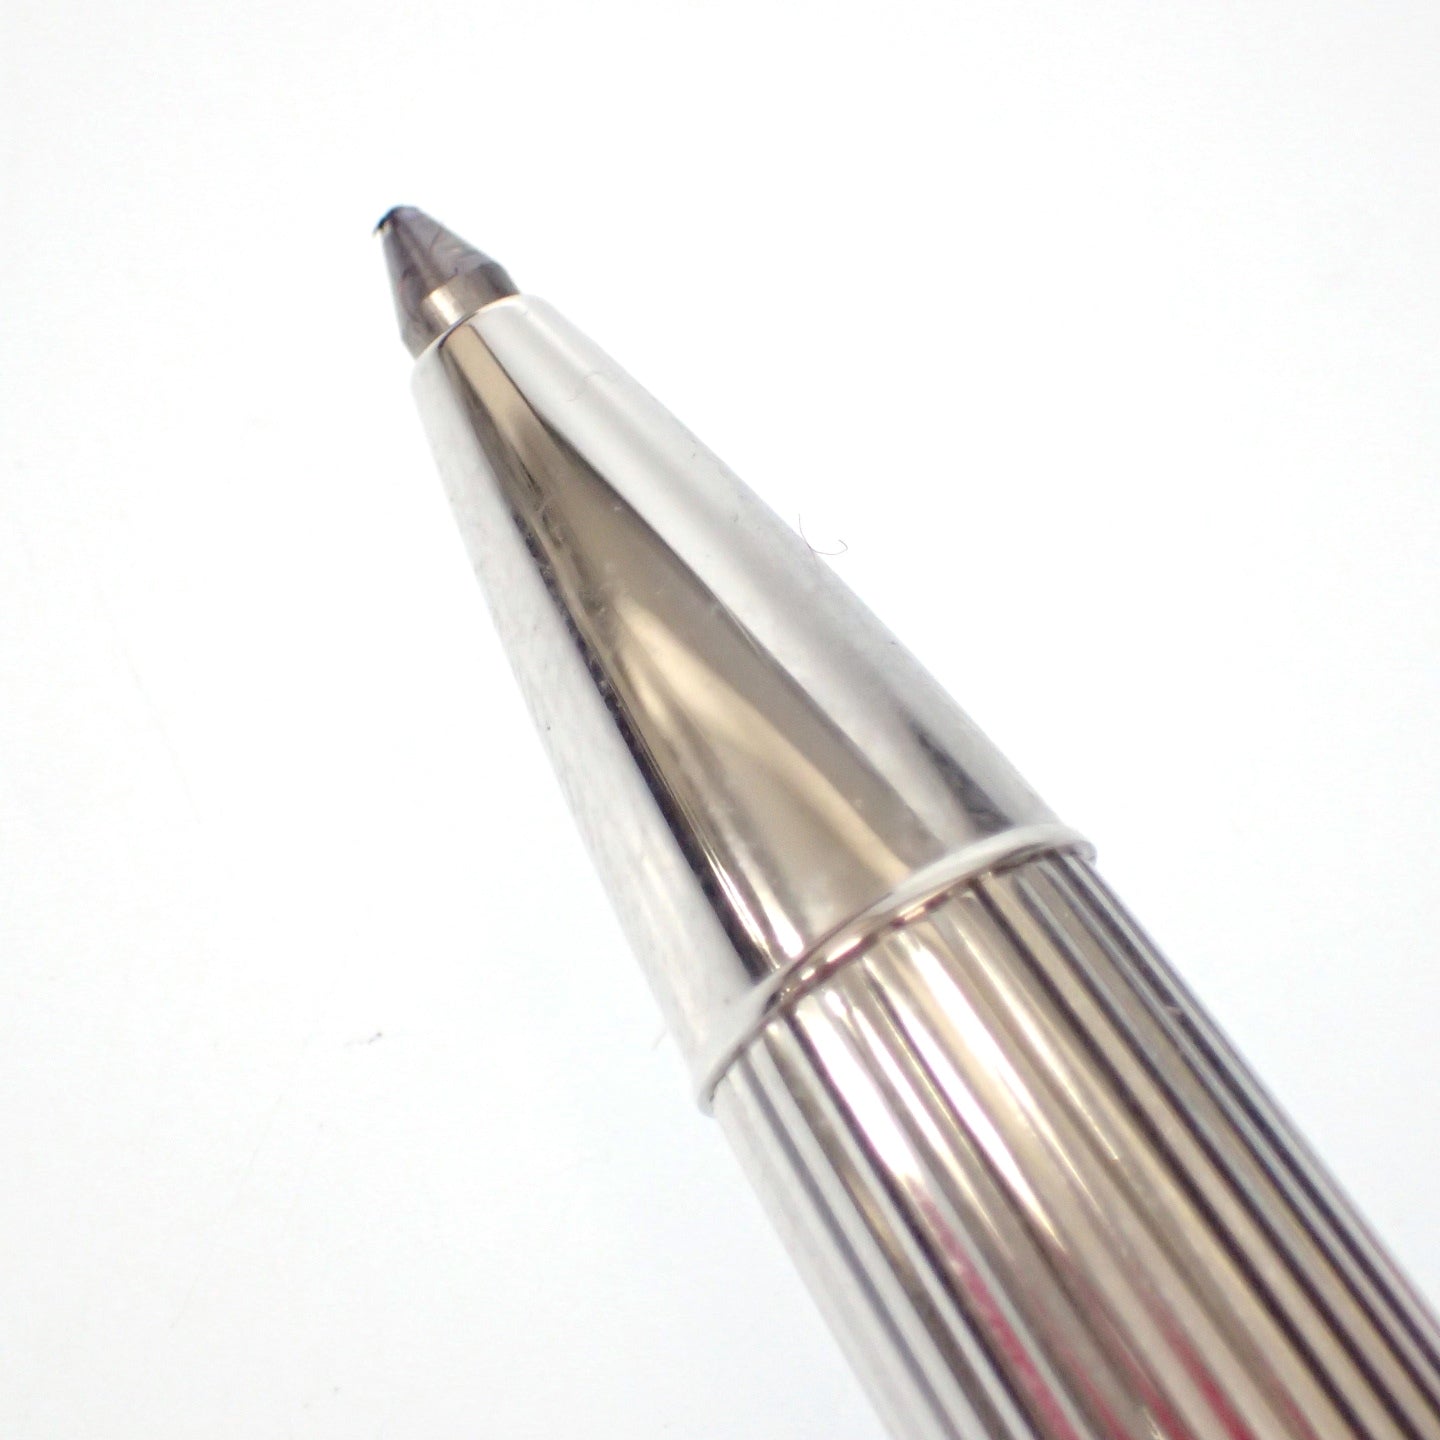 Caran dACHE 钢笔圆珠笔 2 支笔尖套装 18C750 银色带盒 CARAN dACHE [AFI19] [二手] 